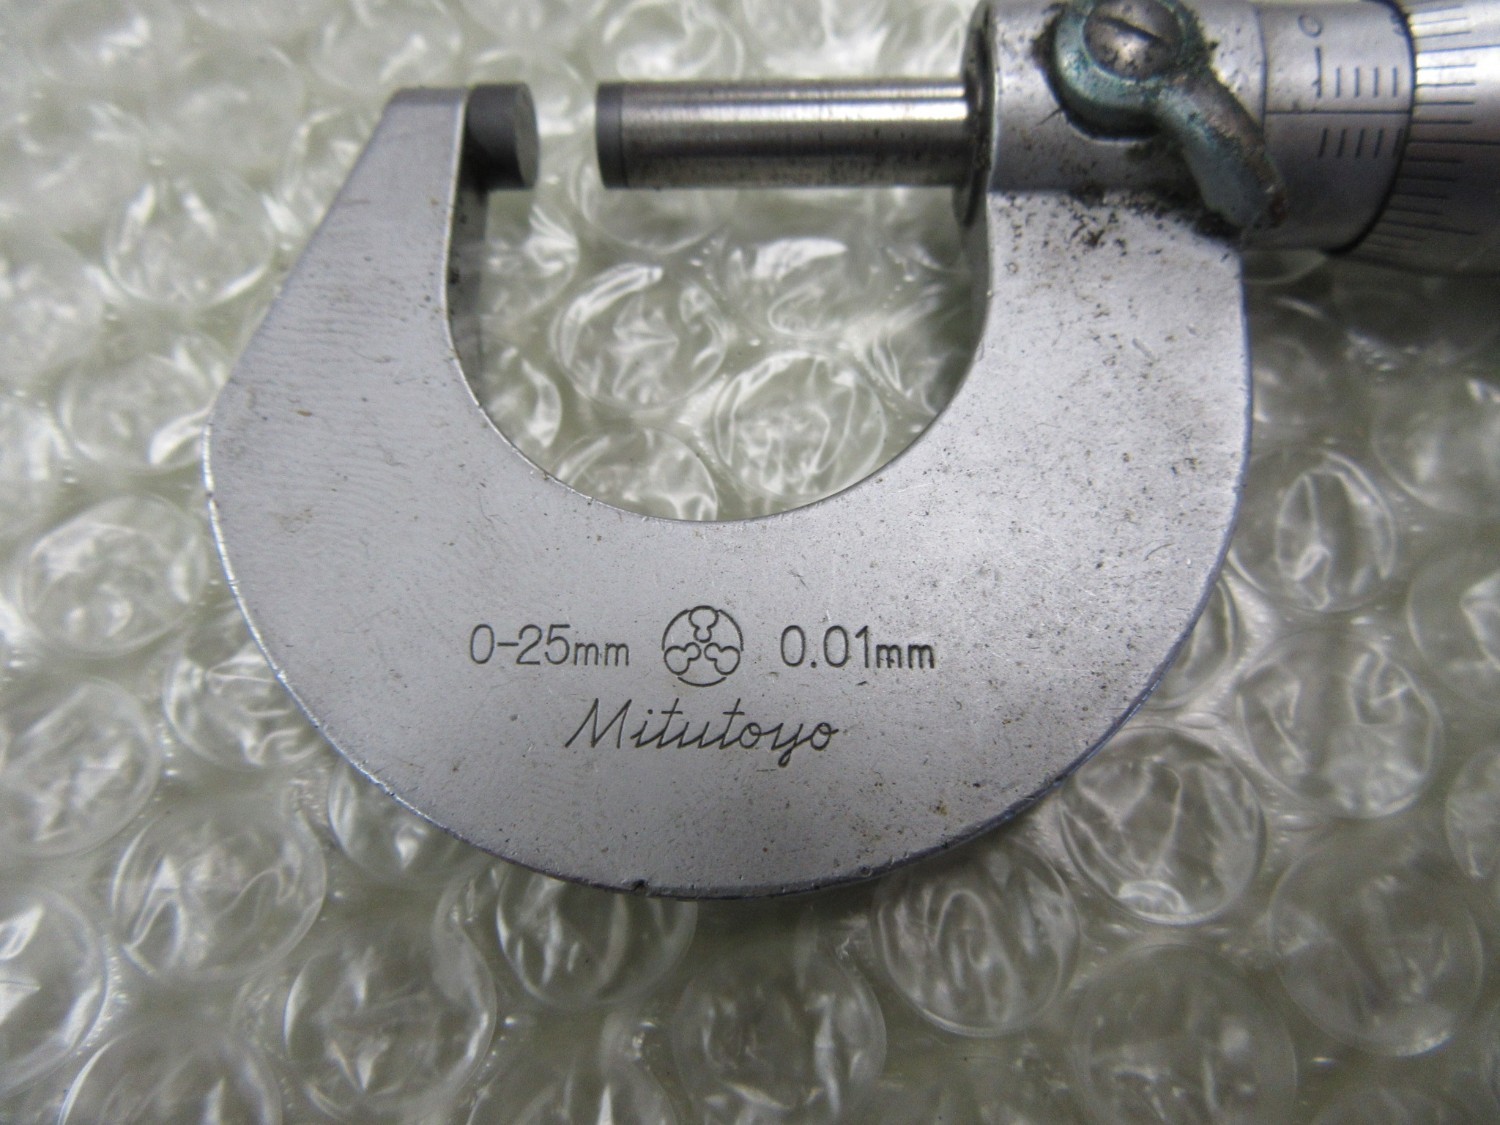 中古Outside micrometer 【外側マイクロメーター】0-25ｍｍ(0.01mm) Mitutoyo